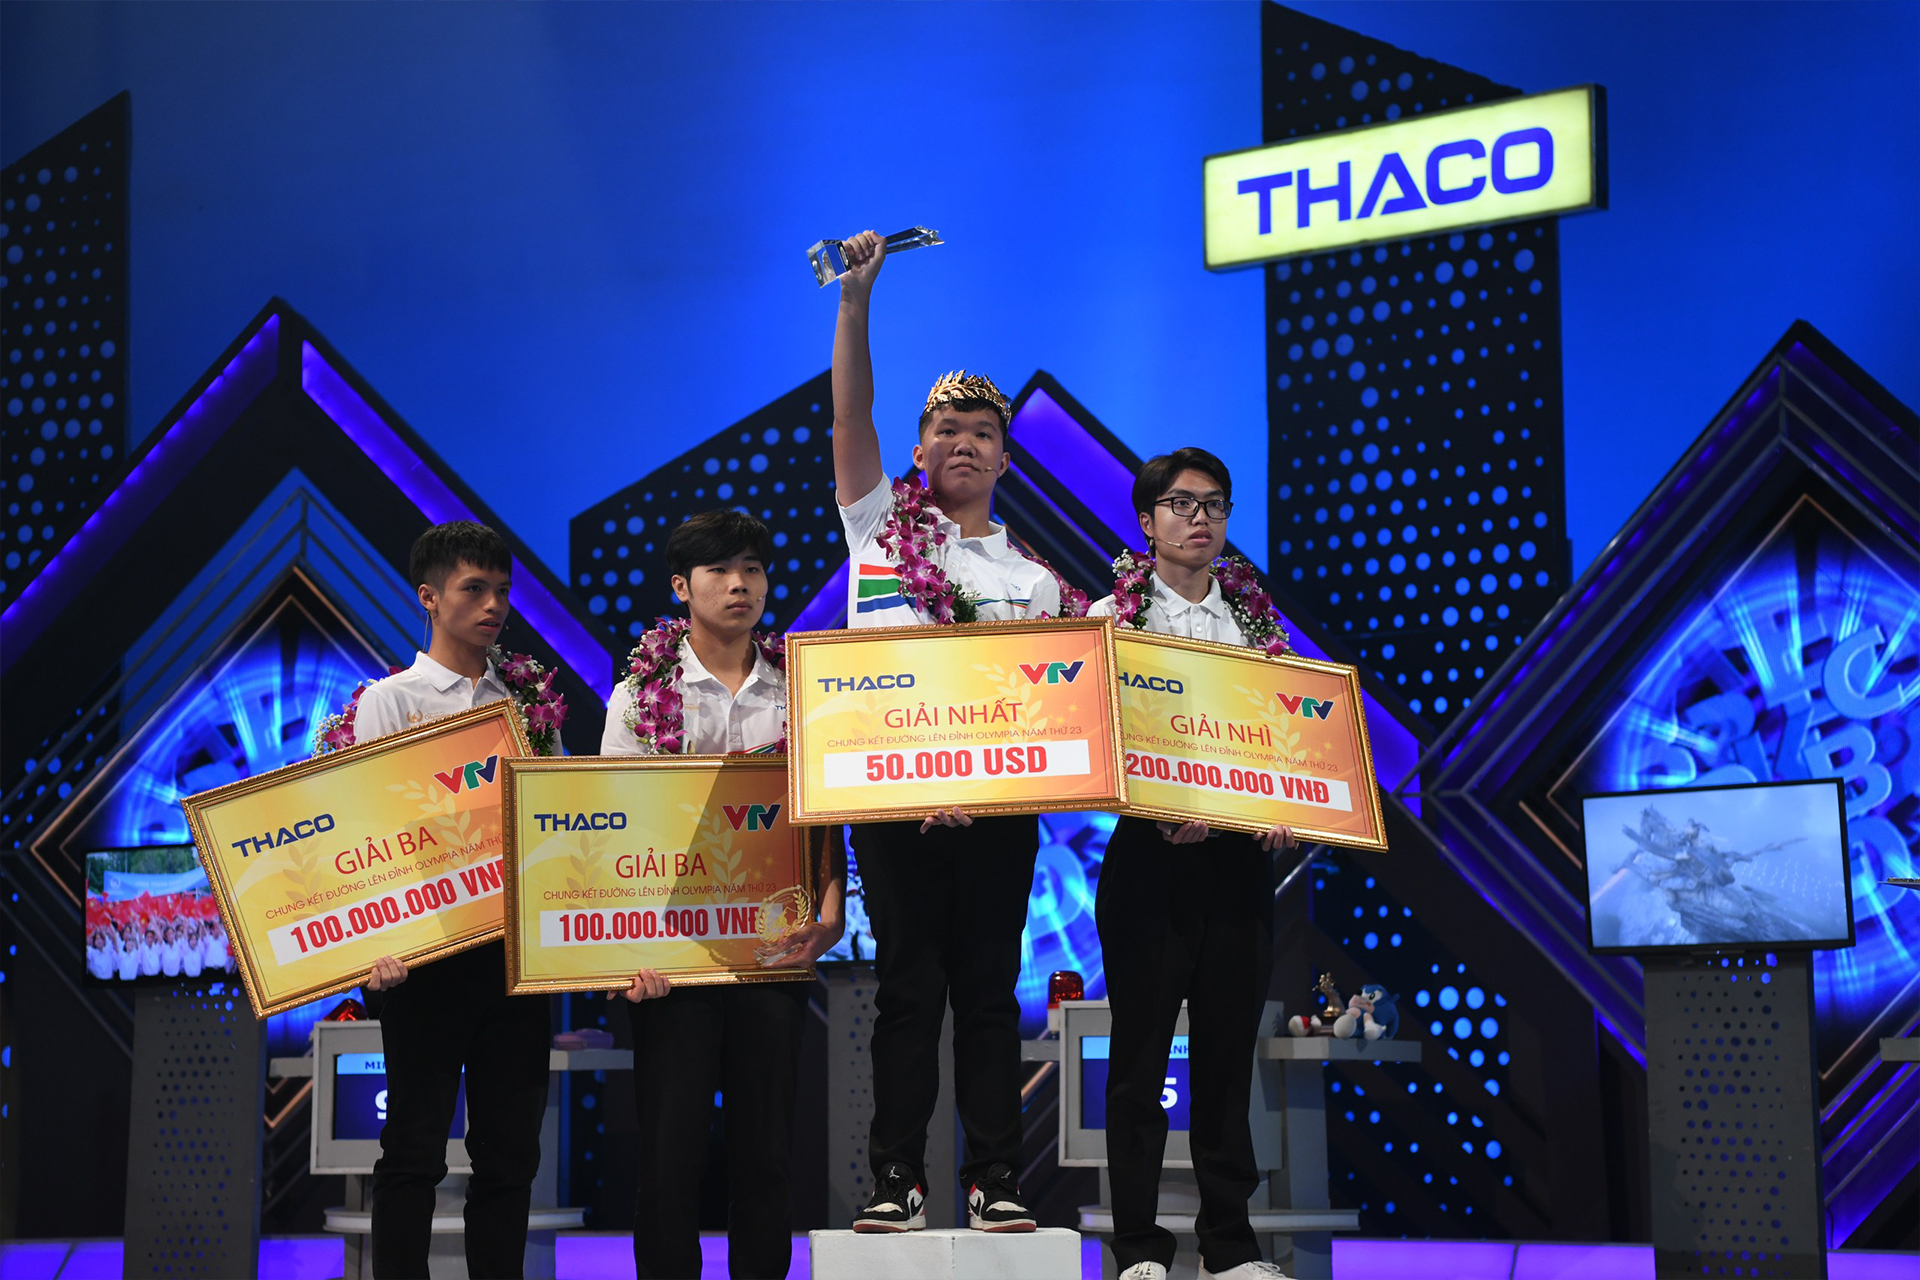 THACO nâng mức thưởng Chung kết Đường lên đỉnh Olympia lên kỷ lục, nhà vô địch nhận 50.000 USD - Ảnh 1.